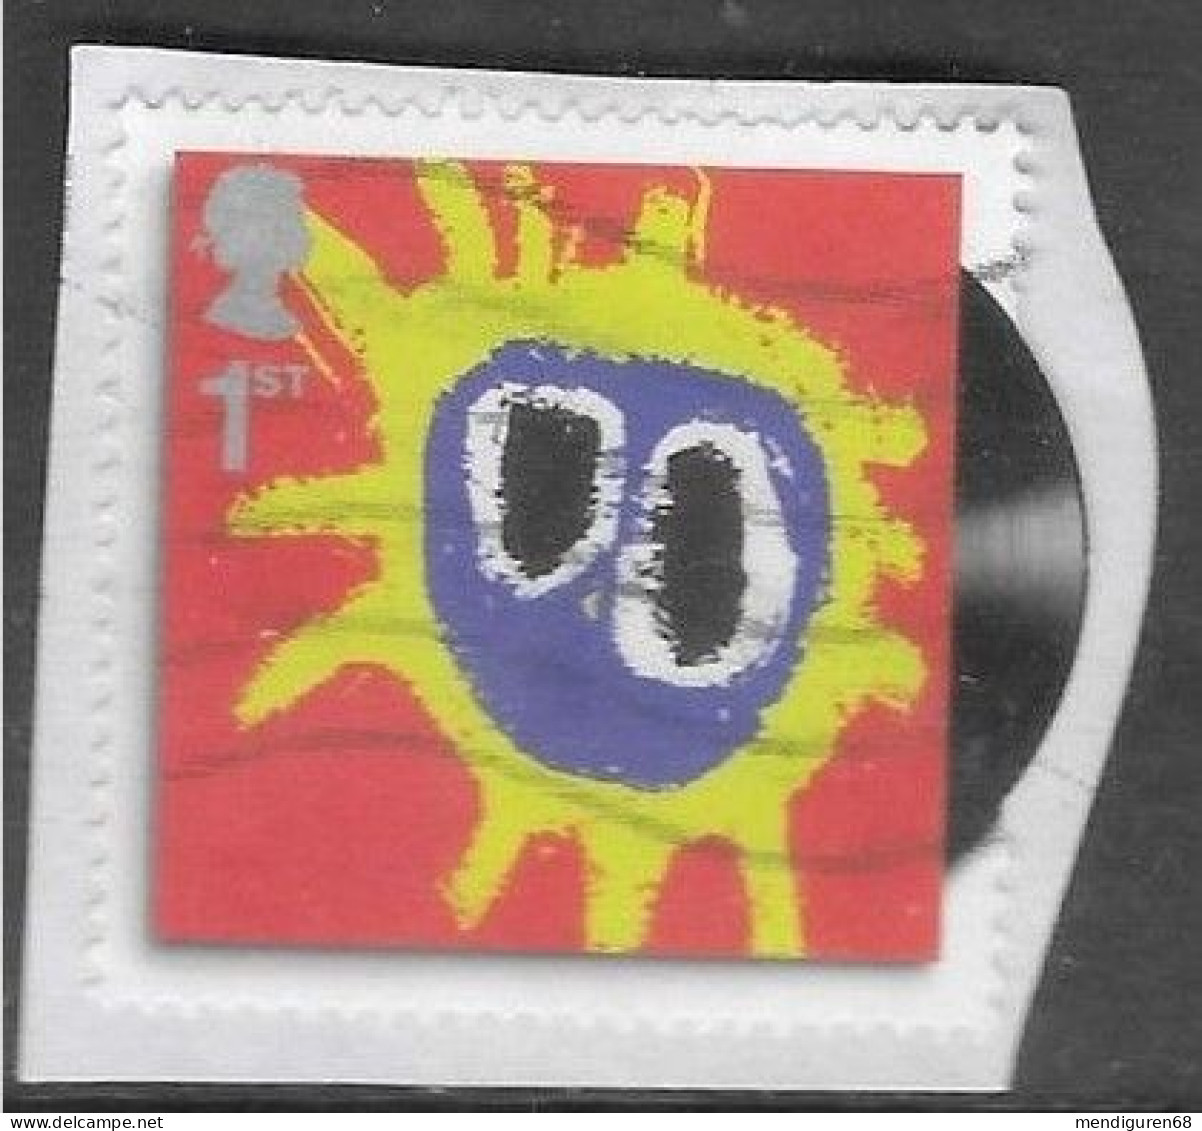 GROSBRITANNIEN GRANDE BRETAGNE GB 2010 CLASSIC ALBUM COVERS S/A:PRIMAL SCREAM USED PAPER SG 3007 SC 2742 MI 2849 YT 3233 - Used Stamps